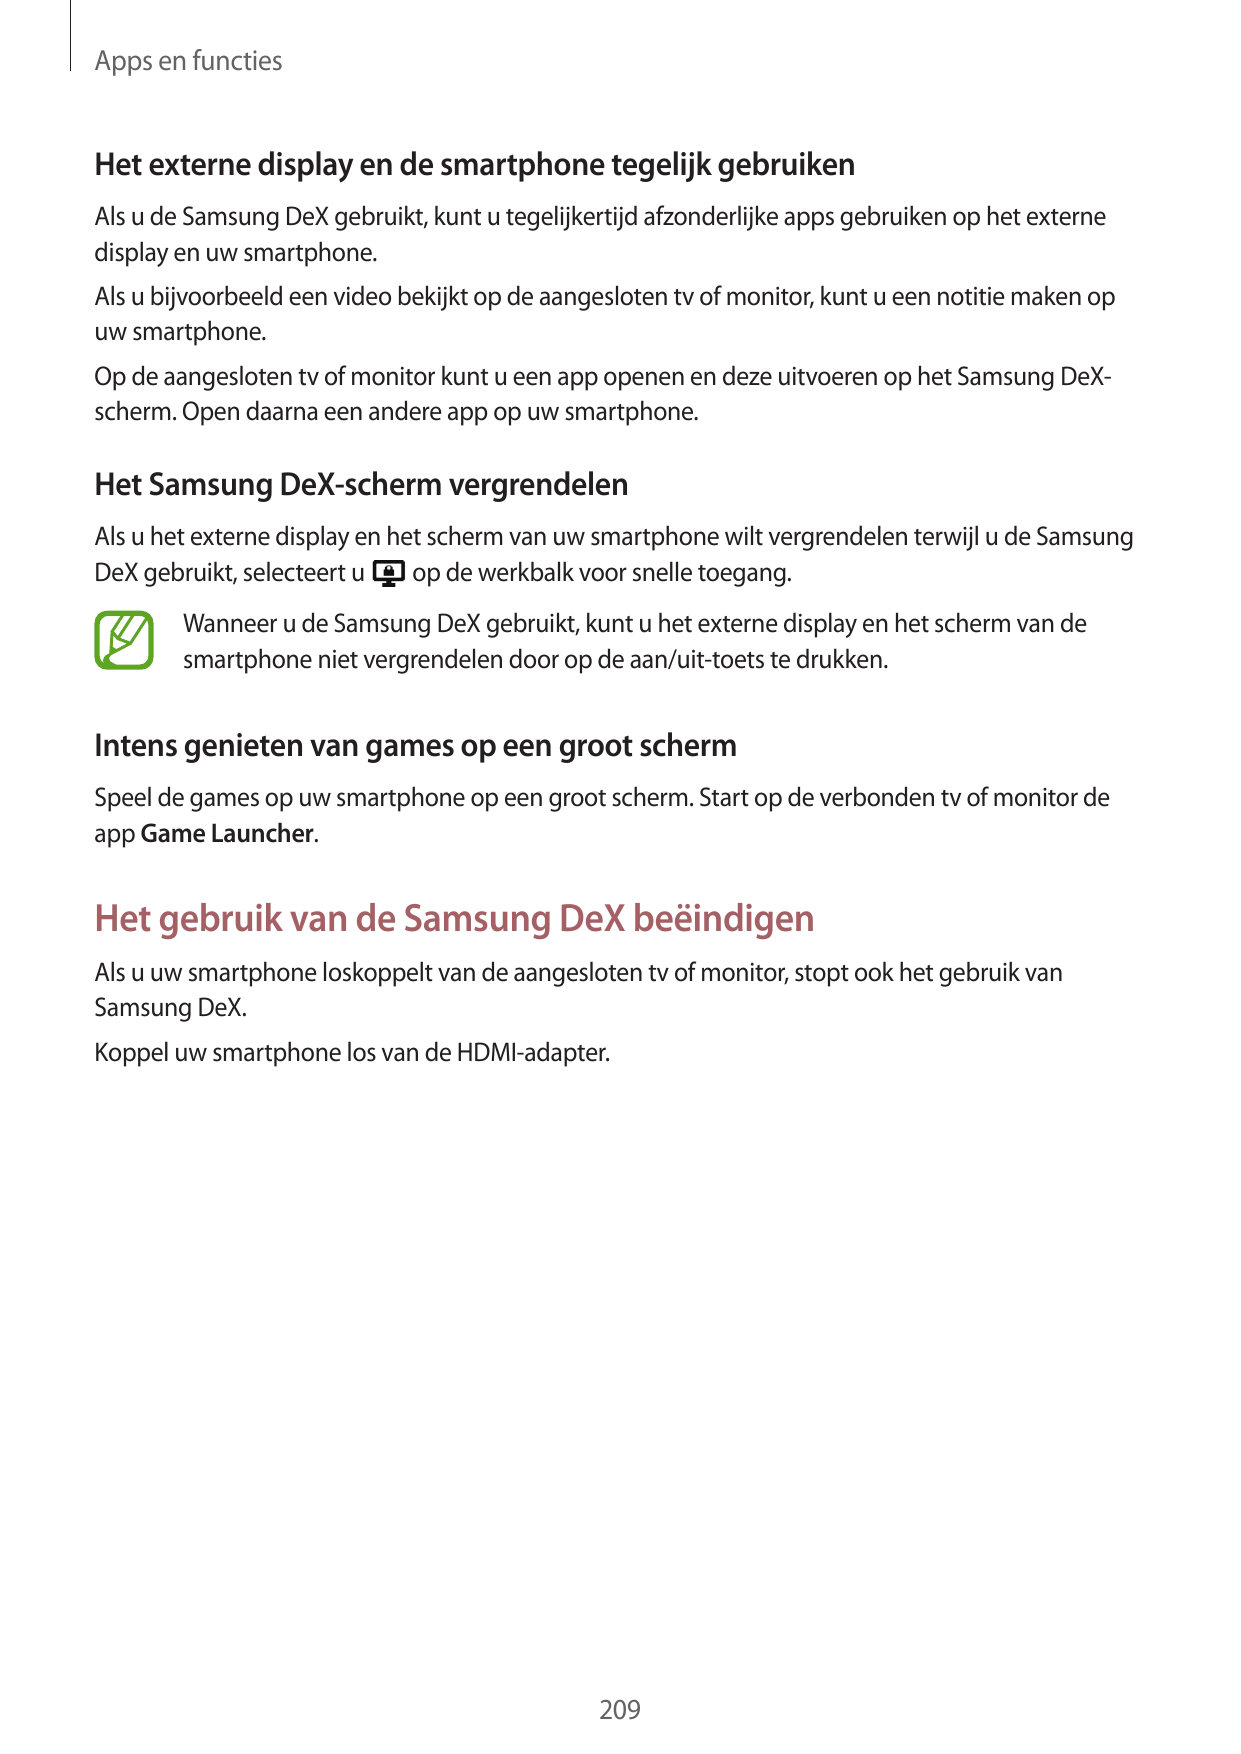 Apps en functiesHet externe display en de smartphone tegelijk gebruikenAls u de Samsung DeX gebruikt, kunt u tegelijkertijd afzo